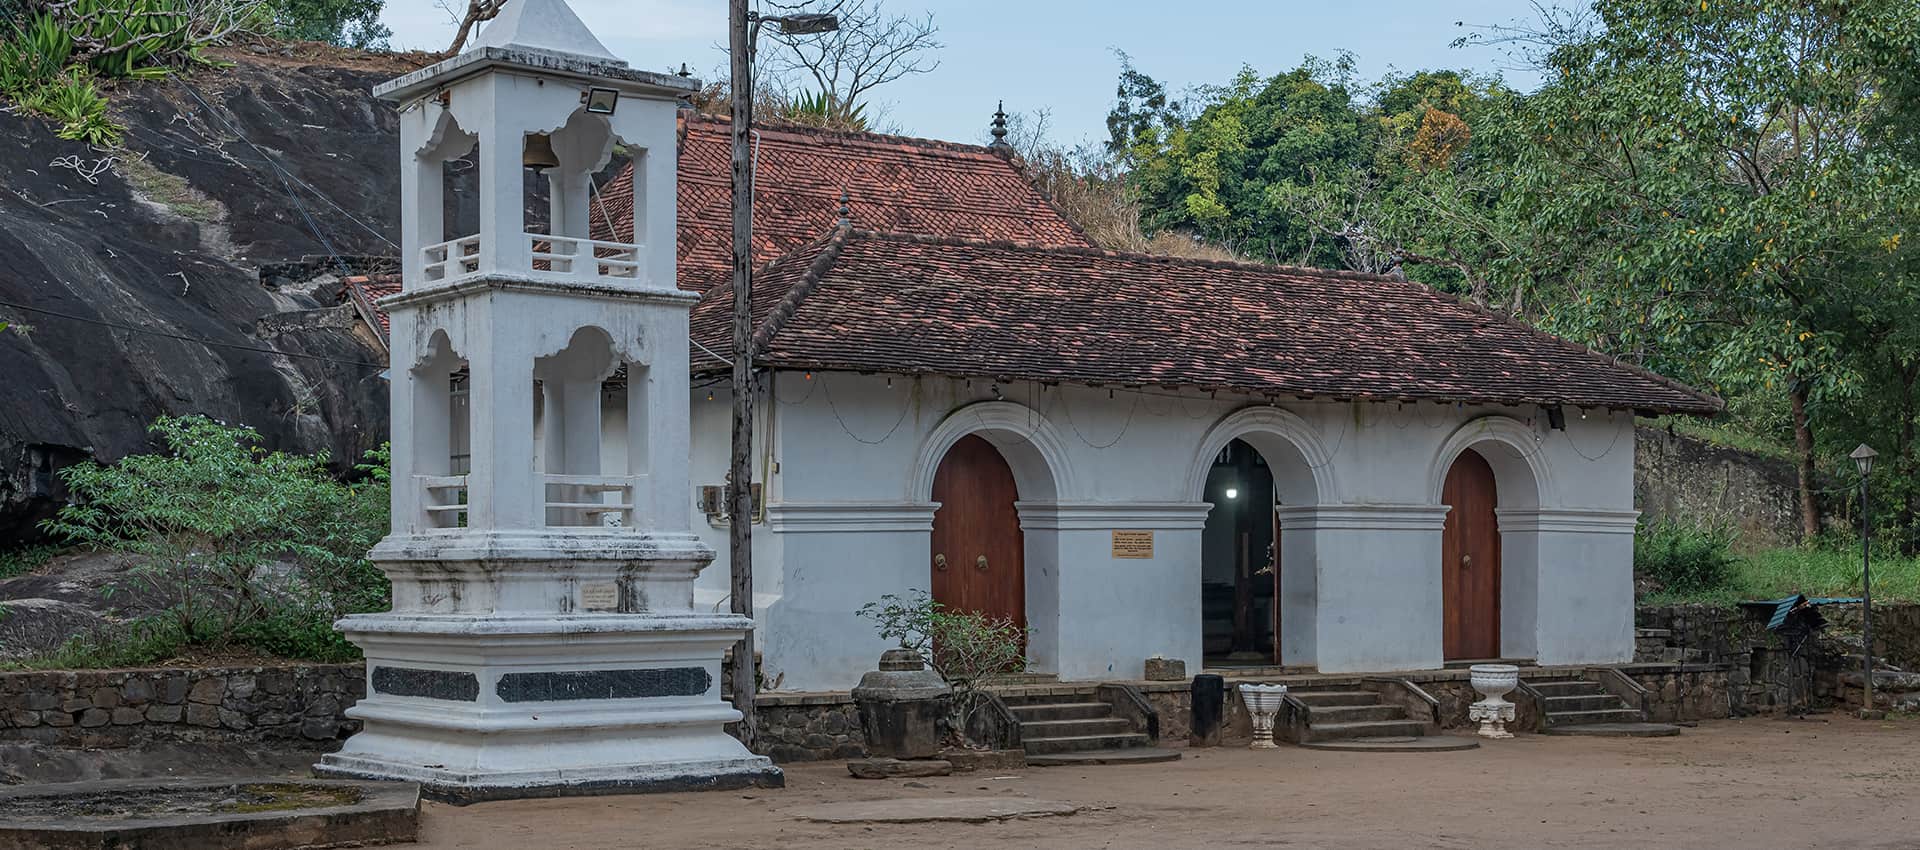 Degaldoruwa Cave Temple